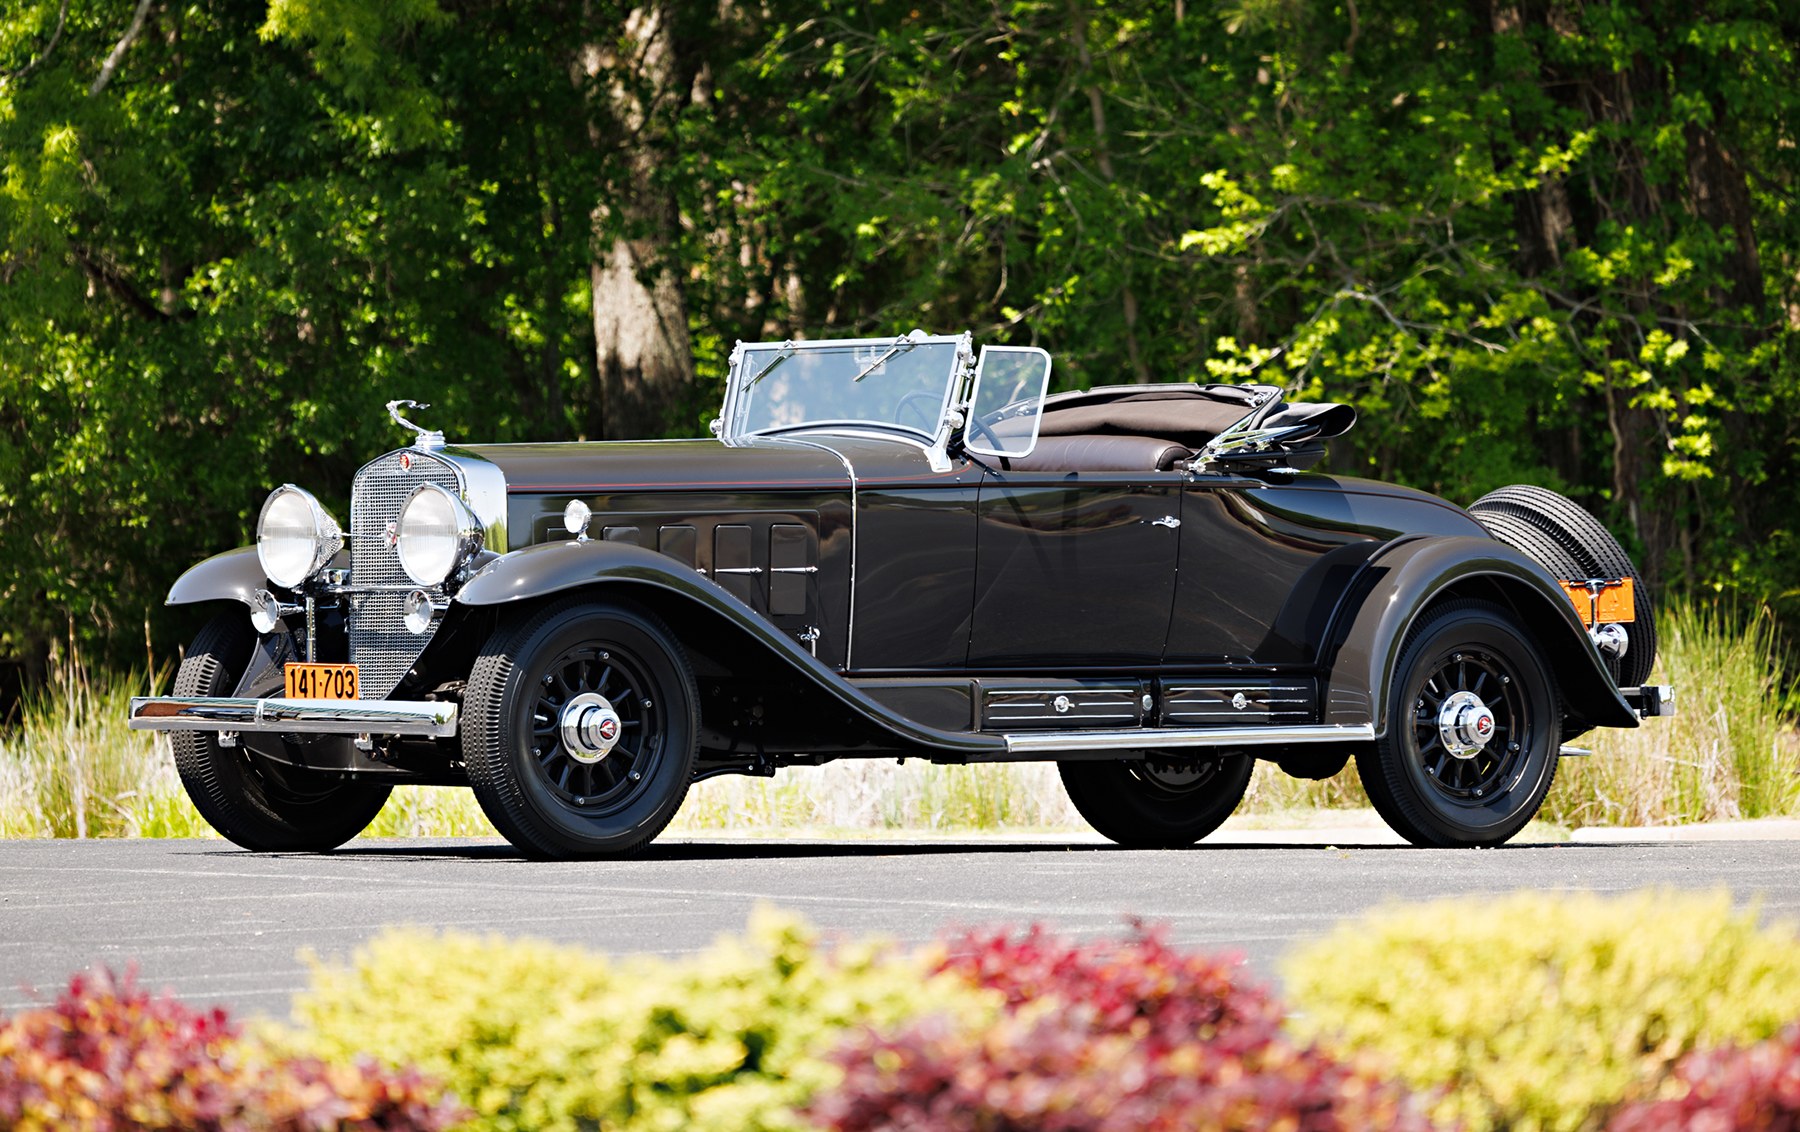 1930 Cadillac Series 452 V-16 Roadster